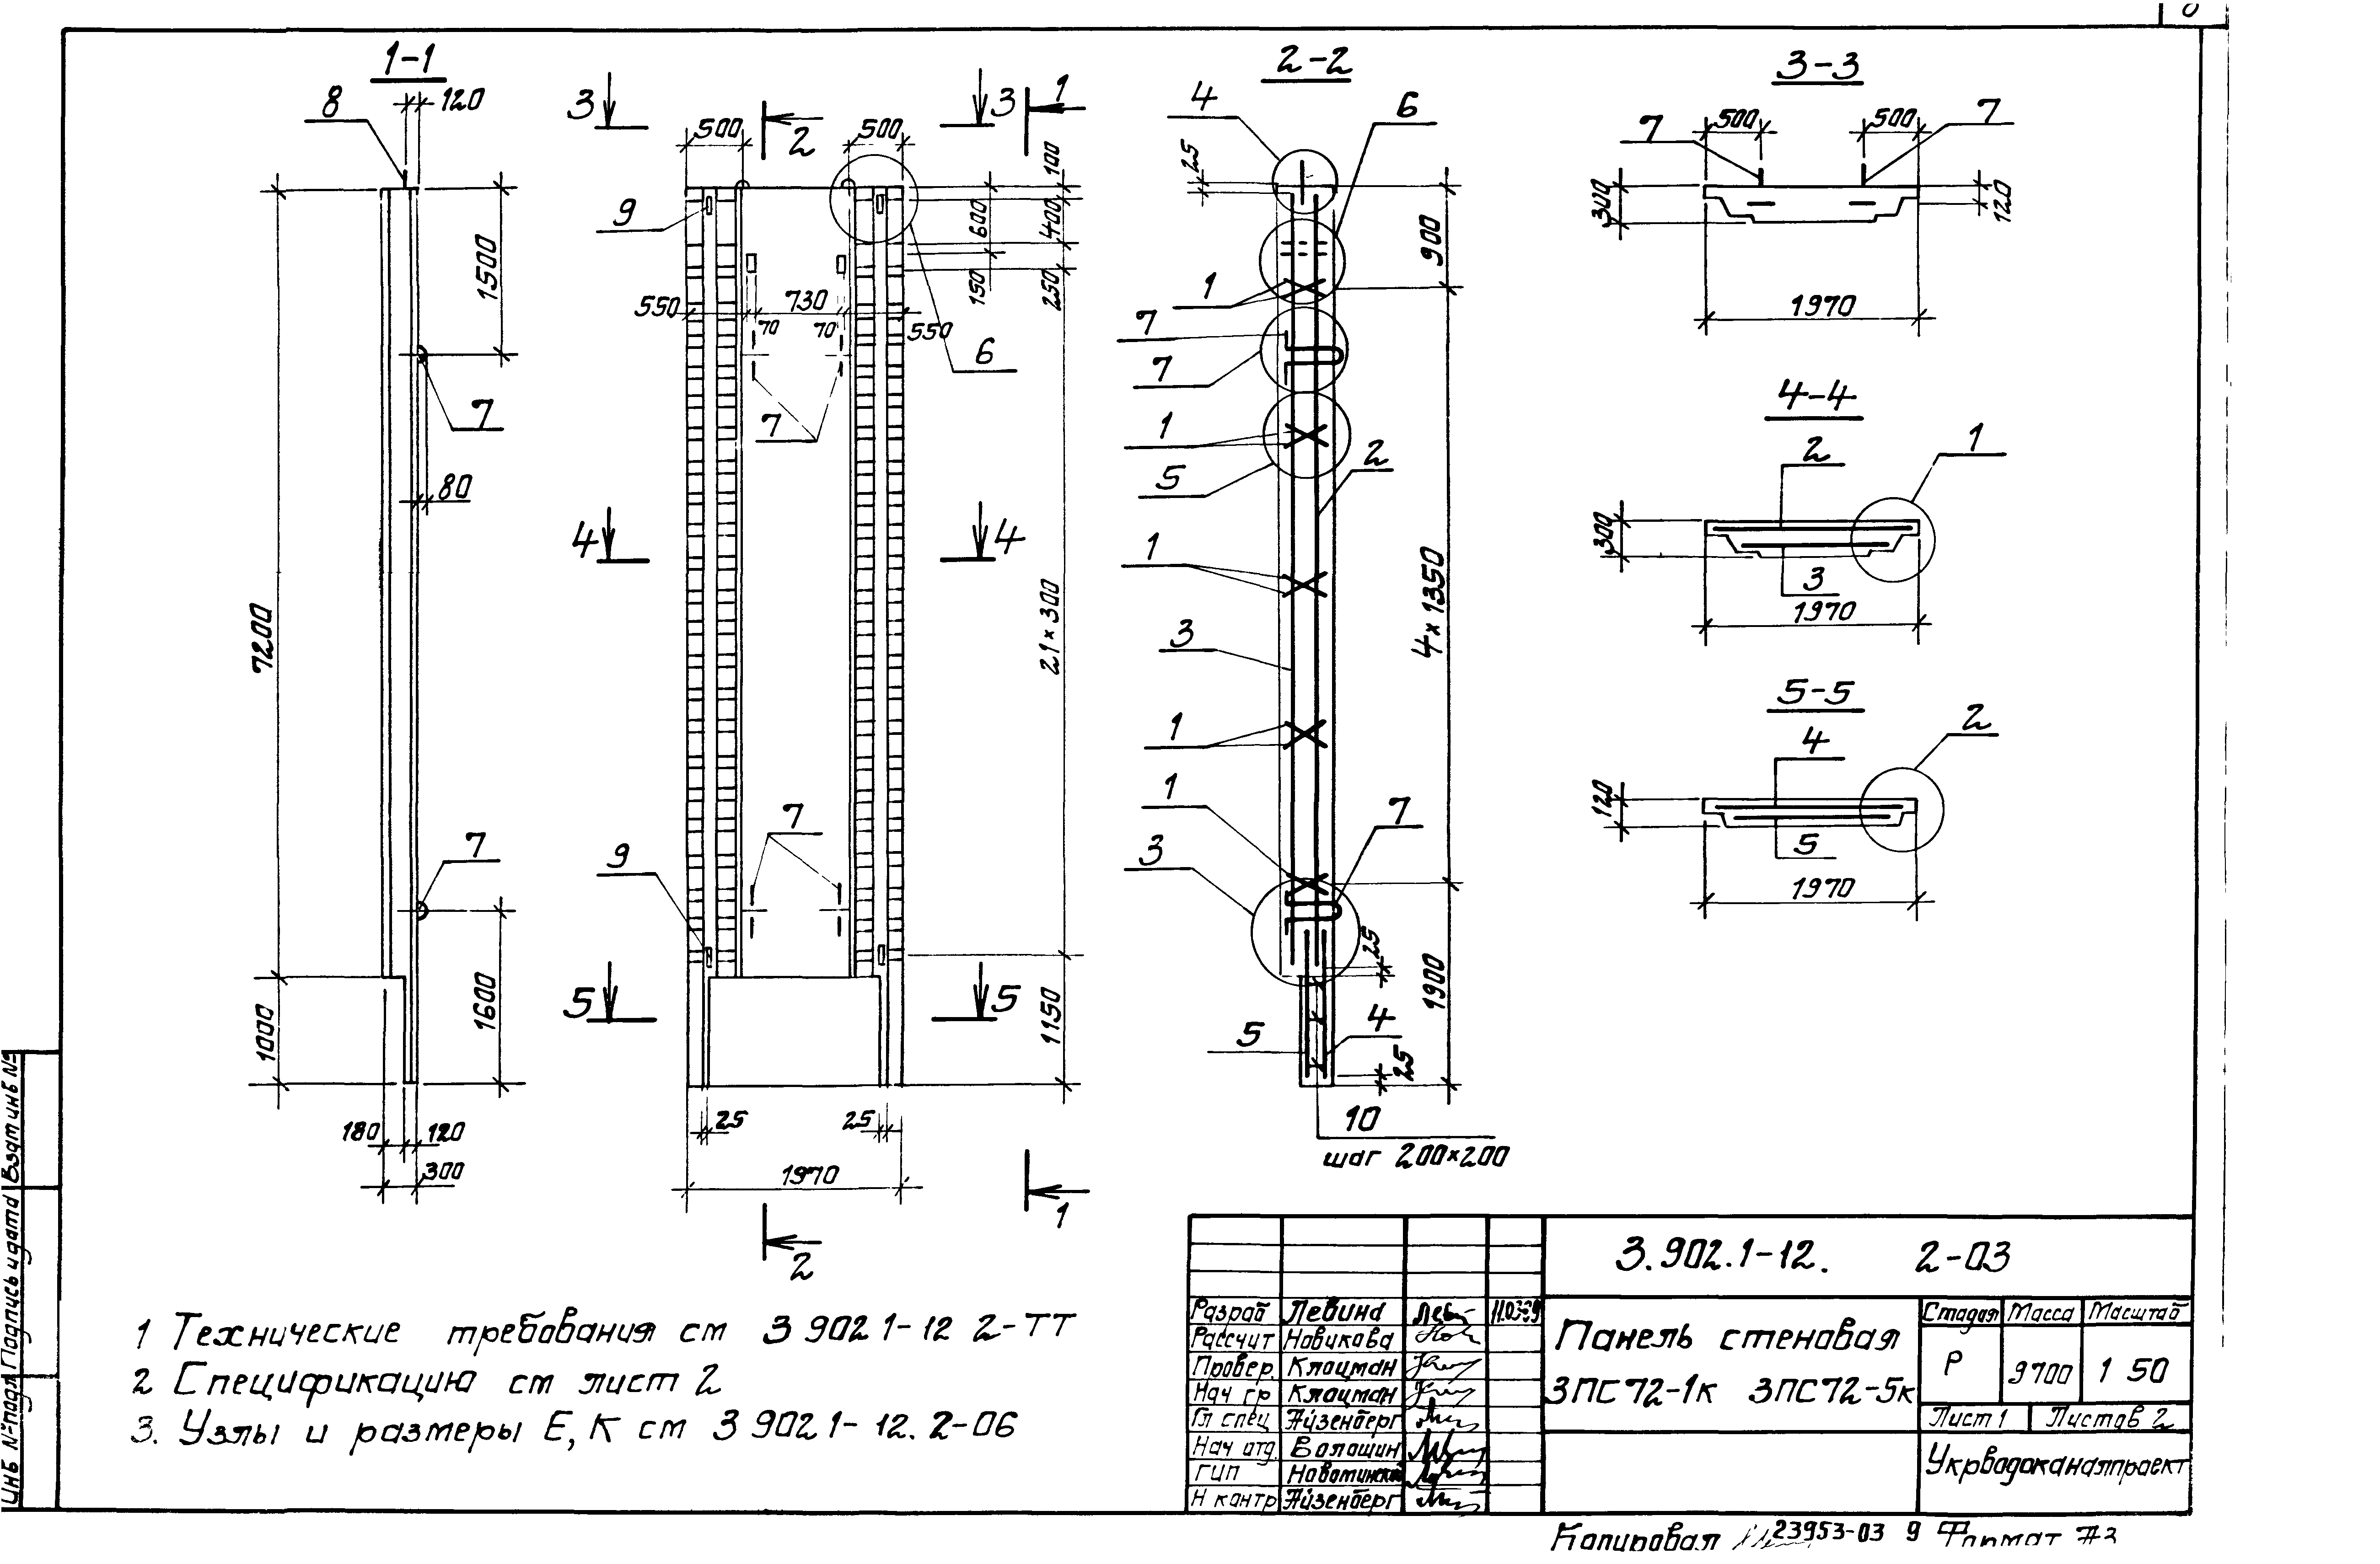 Панель стеновая 3ПС72-3к Серия 3.902.1-12, вып.2